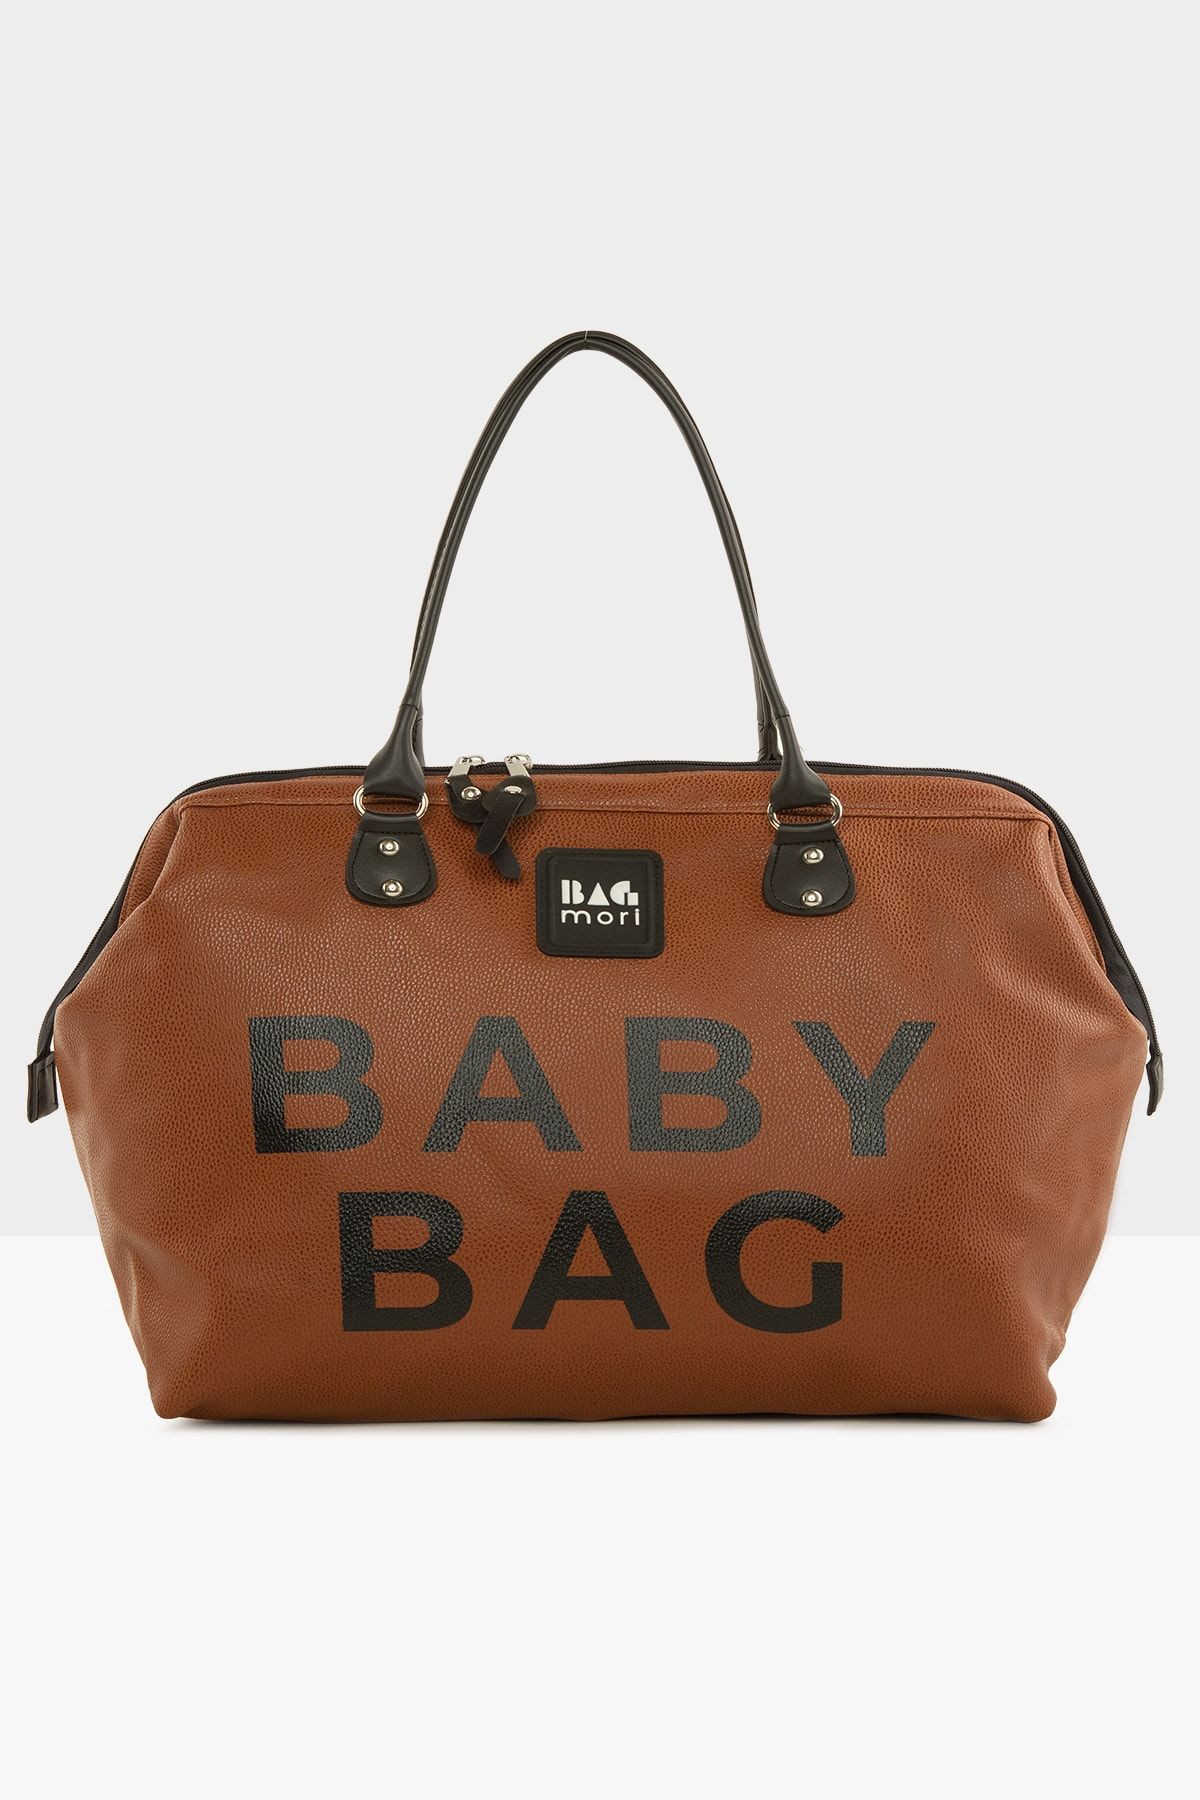 Bagmori Taba Baby Bag Baskılı Deri Anne Bebek Bakım Çantası M000007204